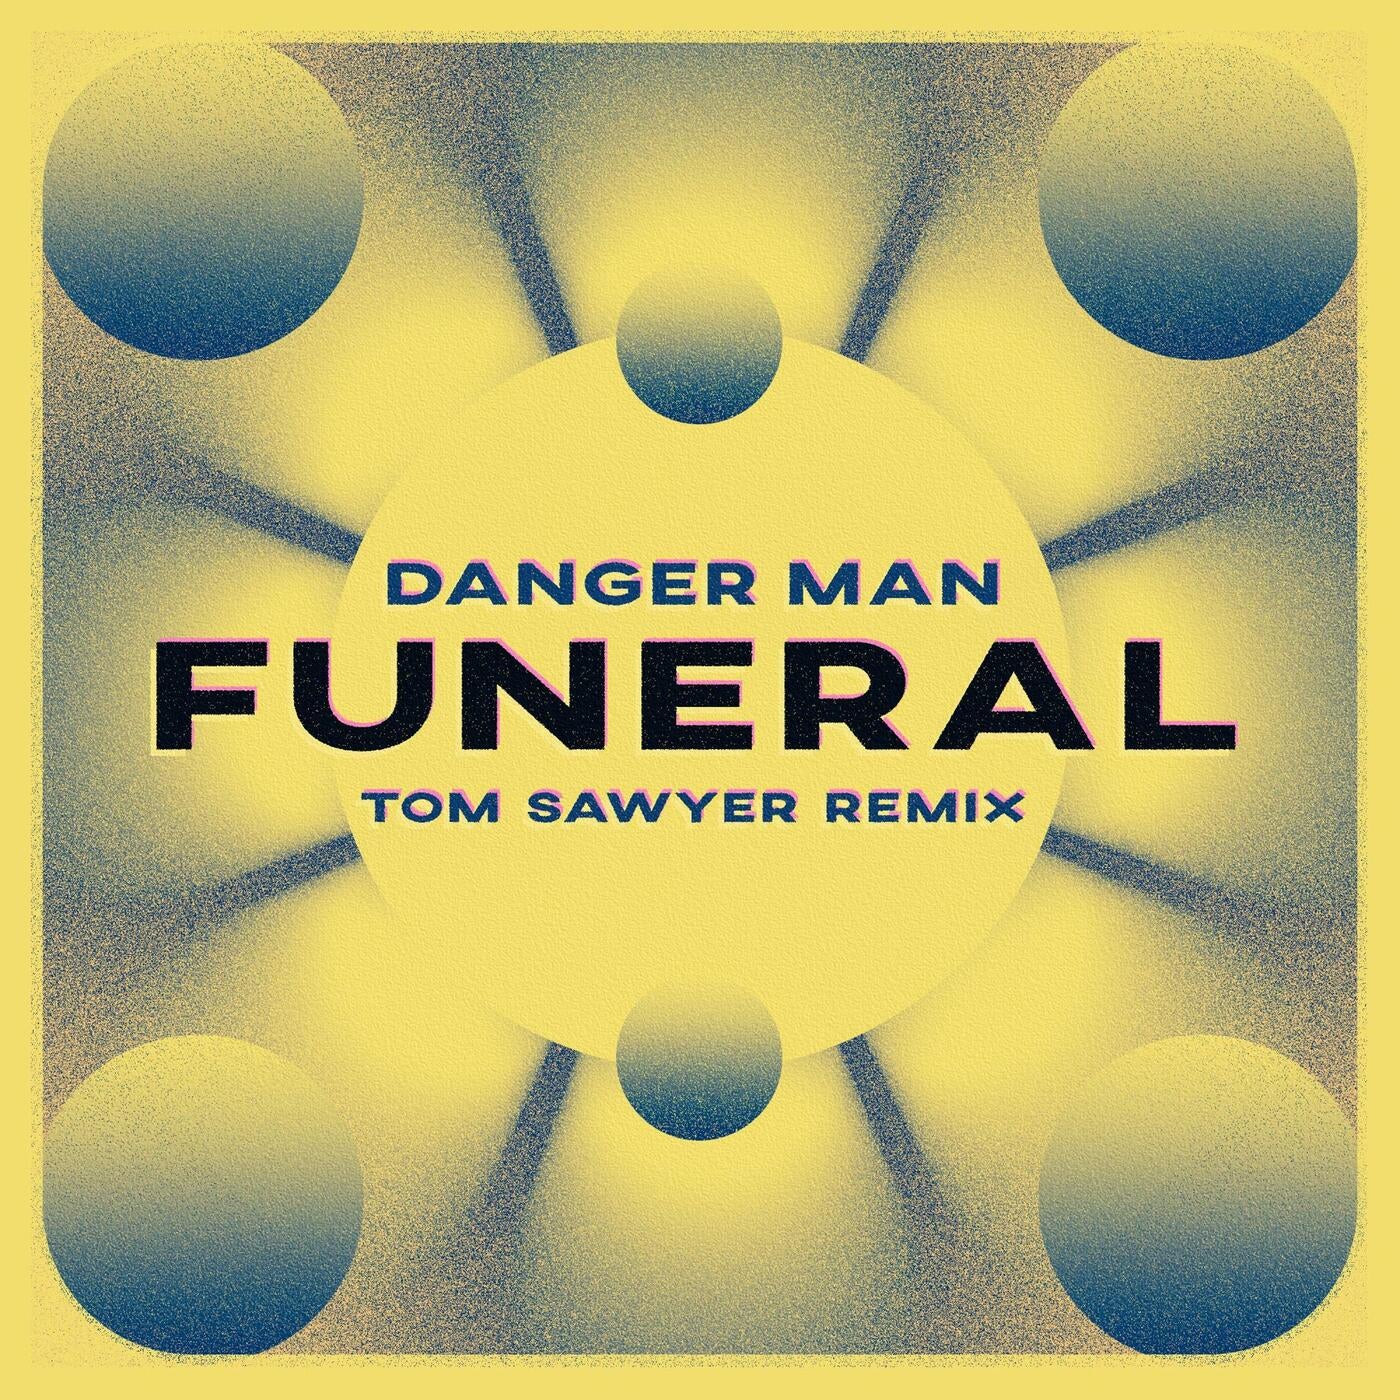 funeral (Tom Sawyer Remix)